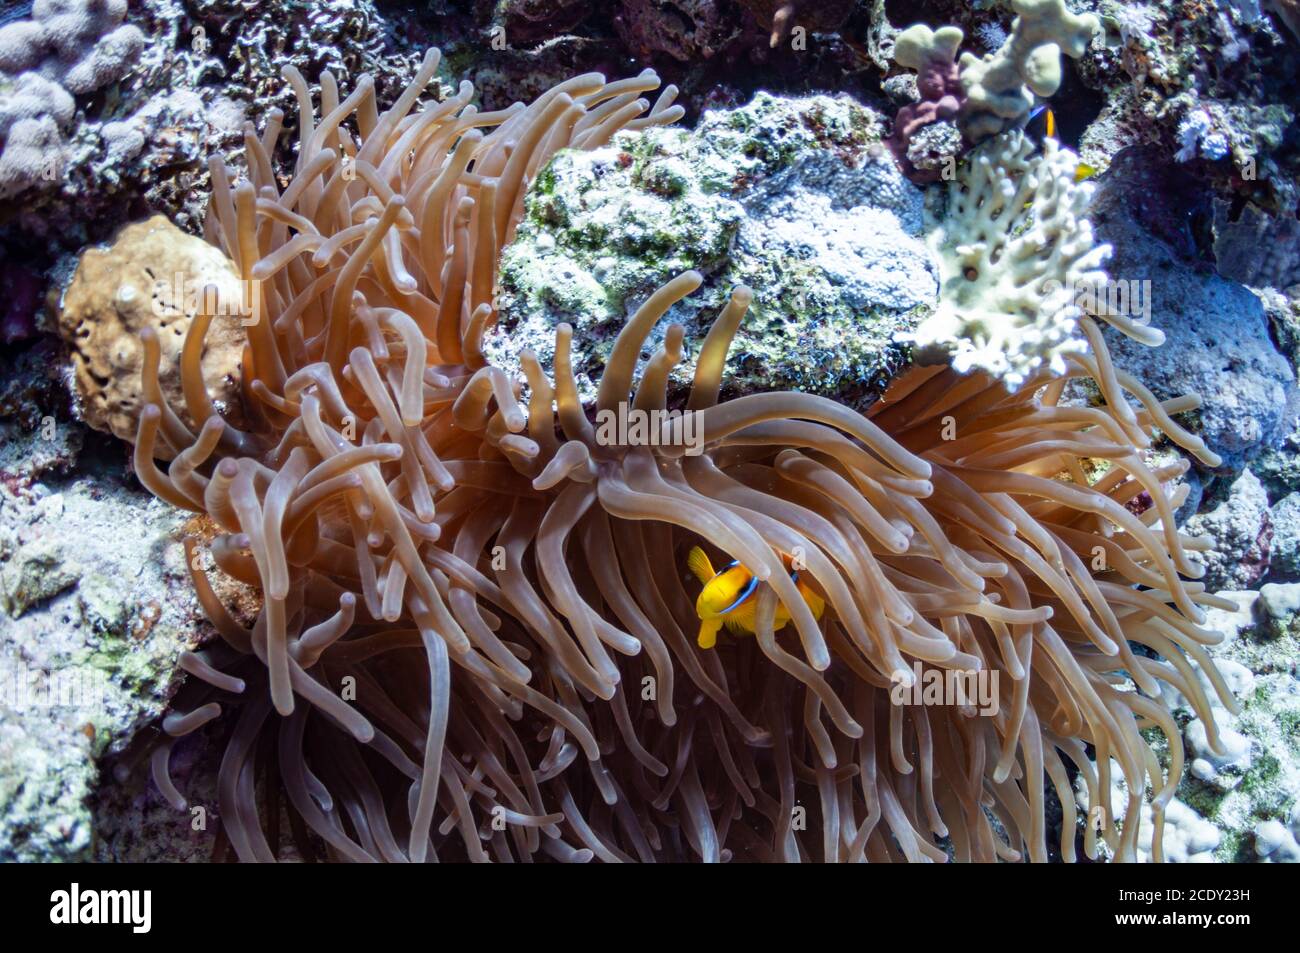 Schöne Nahaufnahme der Meeresbewohner ist eine dunkle Seeanemone, Seepflanze, die entlang des Korallenriffs wächst. Ein Clown Anemone Fisch Schelterin Stockfoto